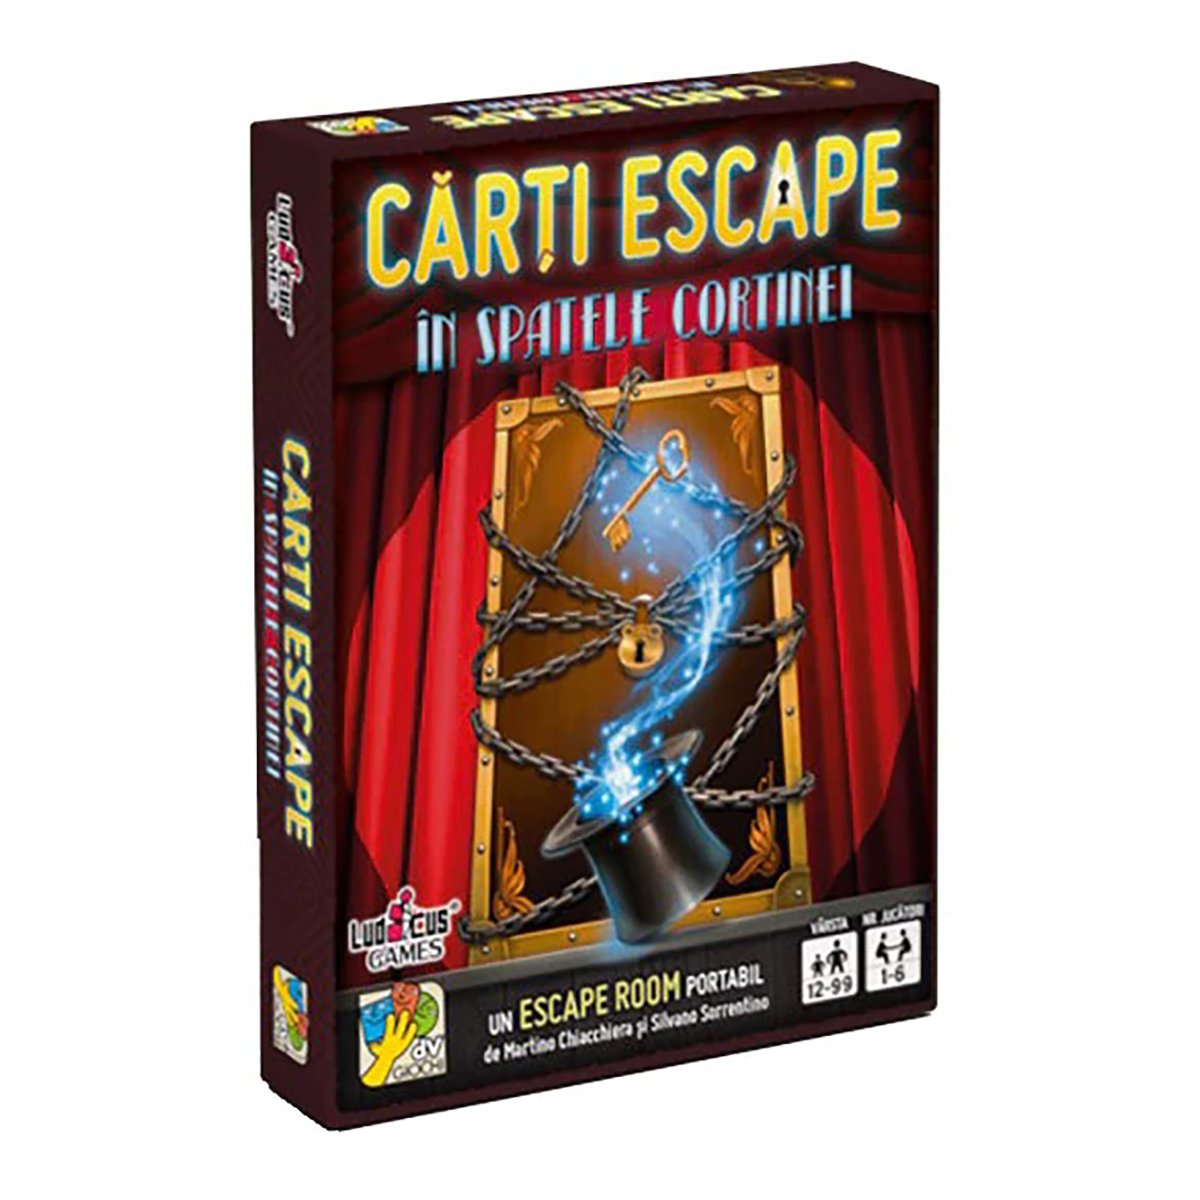 Joc de societate dv Giochi, Carti Escape Ed. II, In spatele cortinei dV Giochi imagine 2022